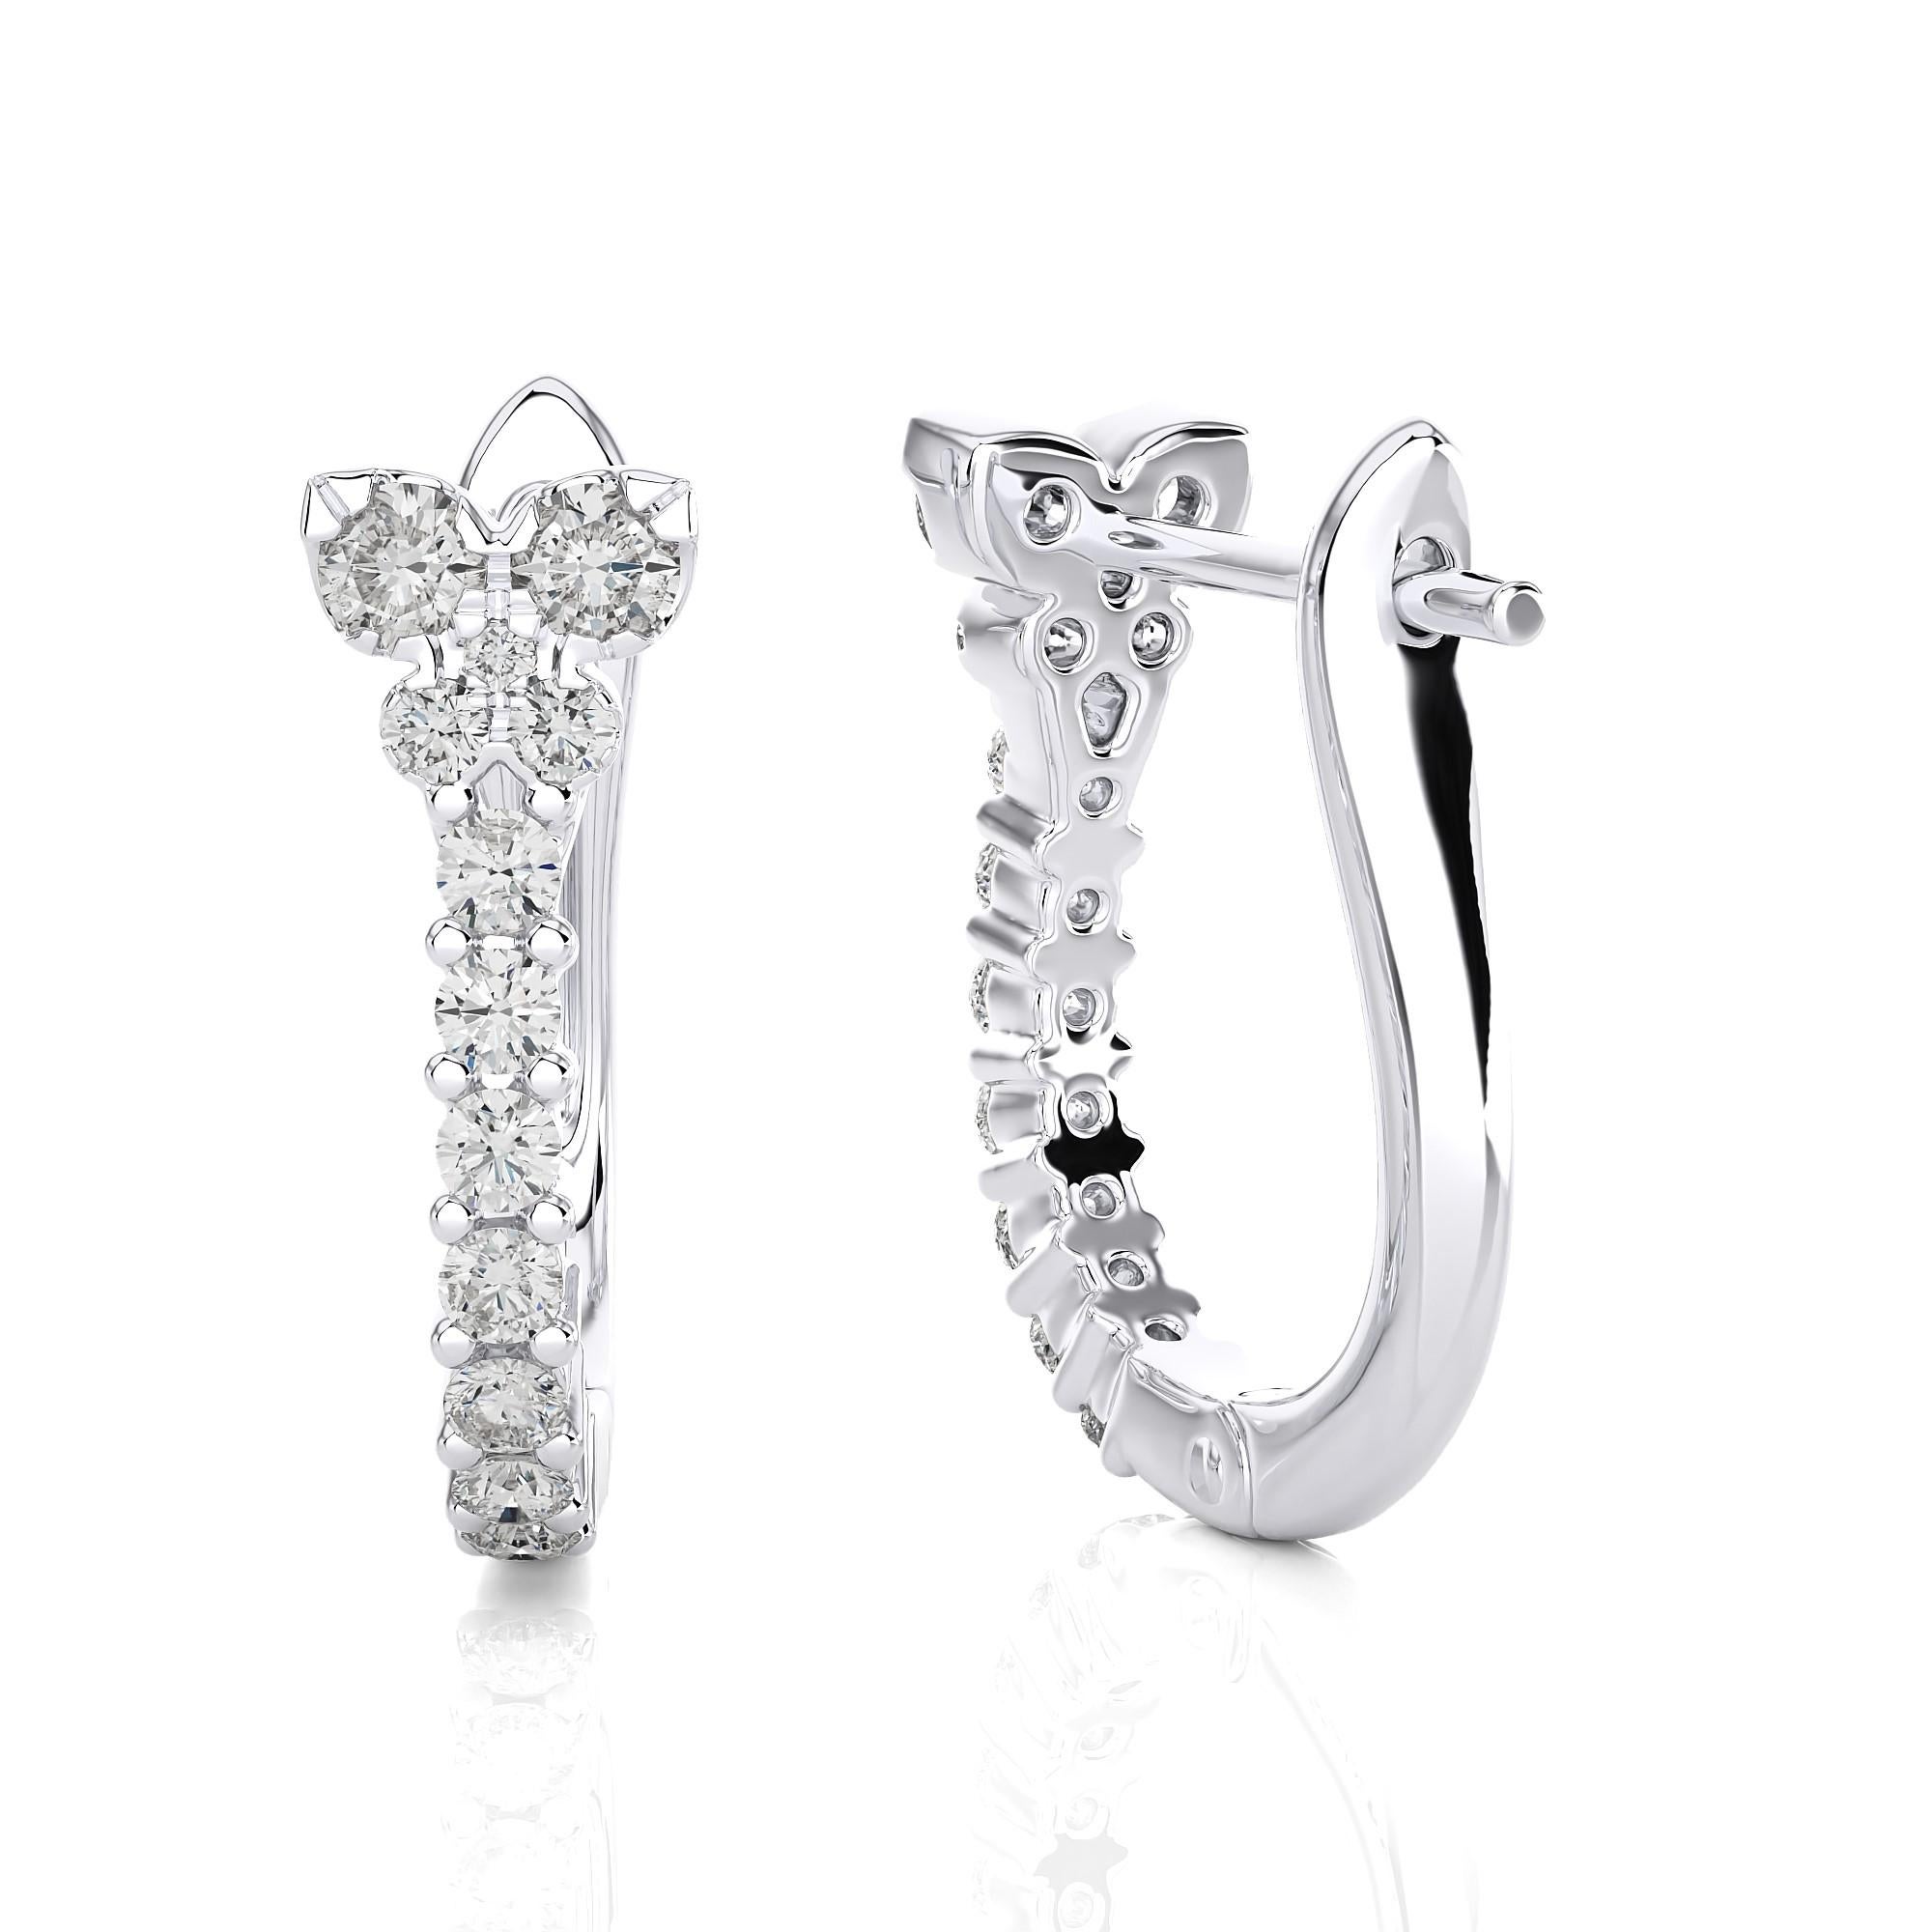 Moderne Diamant und Perle Huggie Ohrringe (0,31 Ct).

In diesem kosmischen Duo reiht sich eine Reihe von Diamanten mit einem Schmetterlingsmotiv auf der Oberseite wie funkelnde Sterne am Nachthimmel aneinander, makellos eingebettet in eine